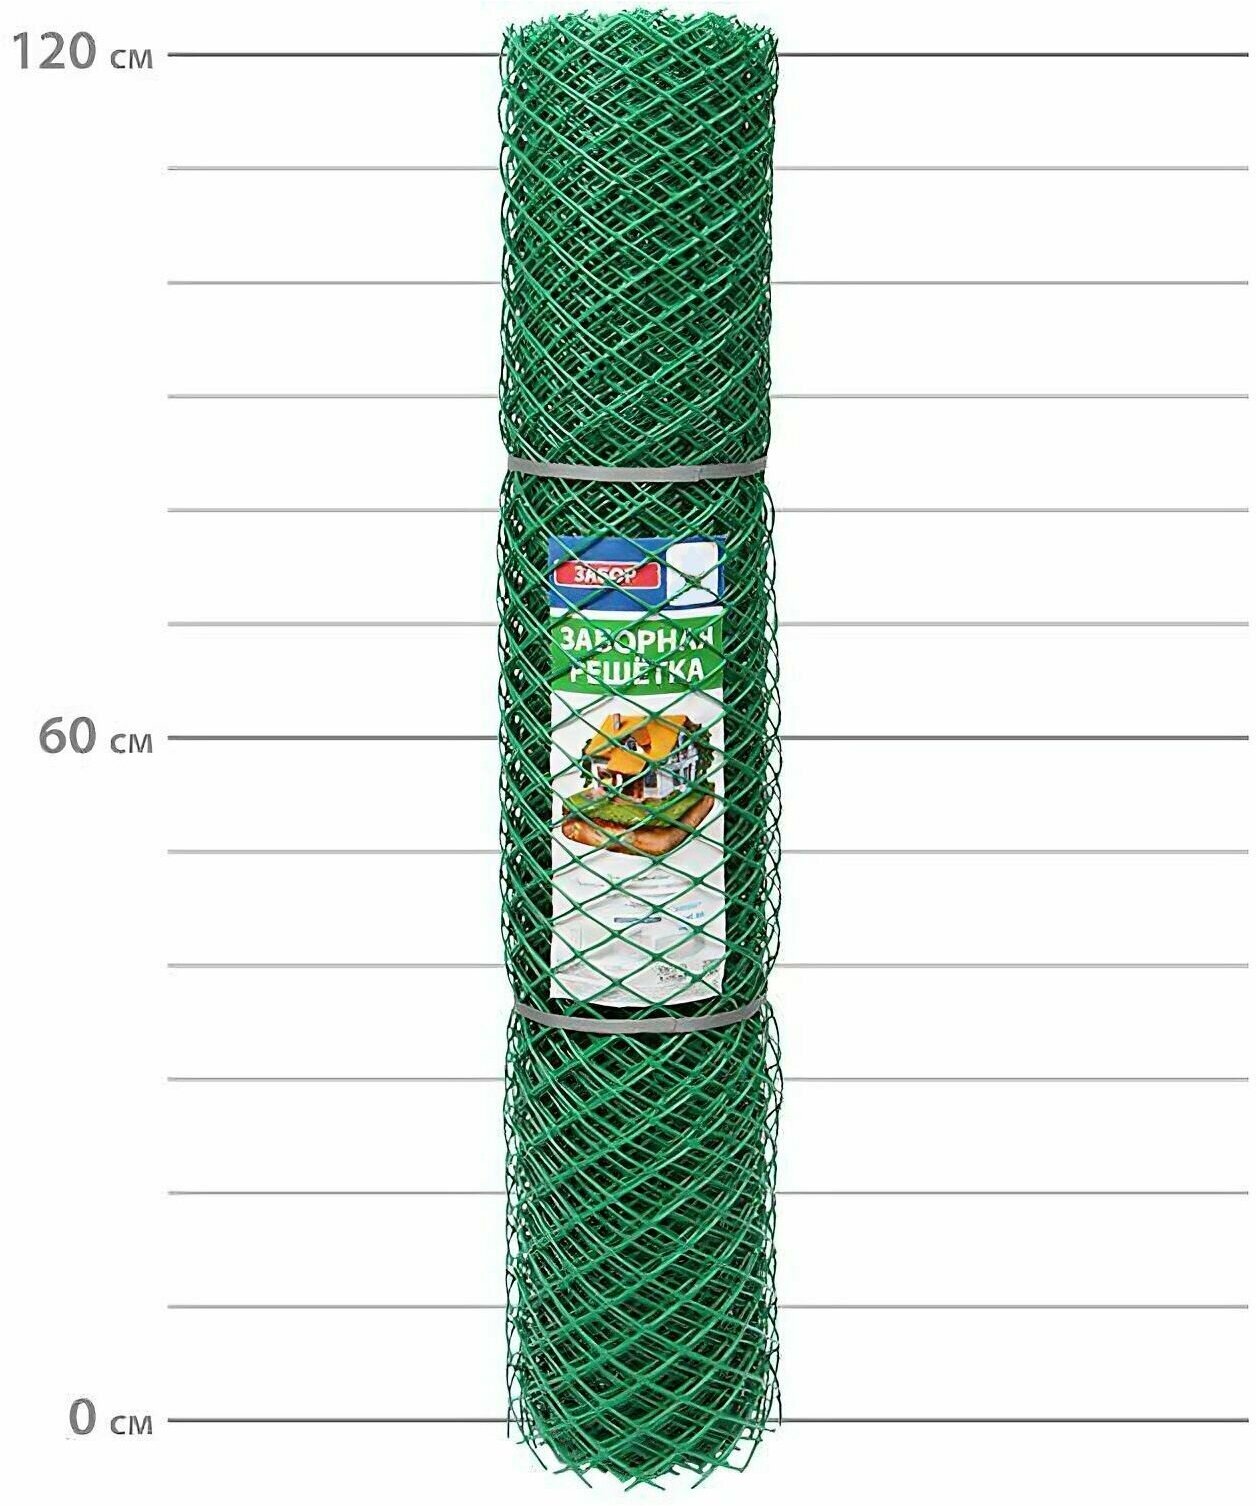 Садовая заборная сетка пластиковая размер 1.2x10 м цвет зеленый ячейка 35x35 мм. Для пергол и шпалер. Служит опорой для поддержки вьющихся и лазающих растений